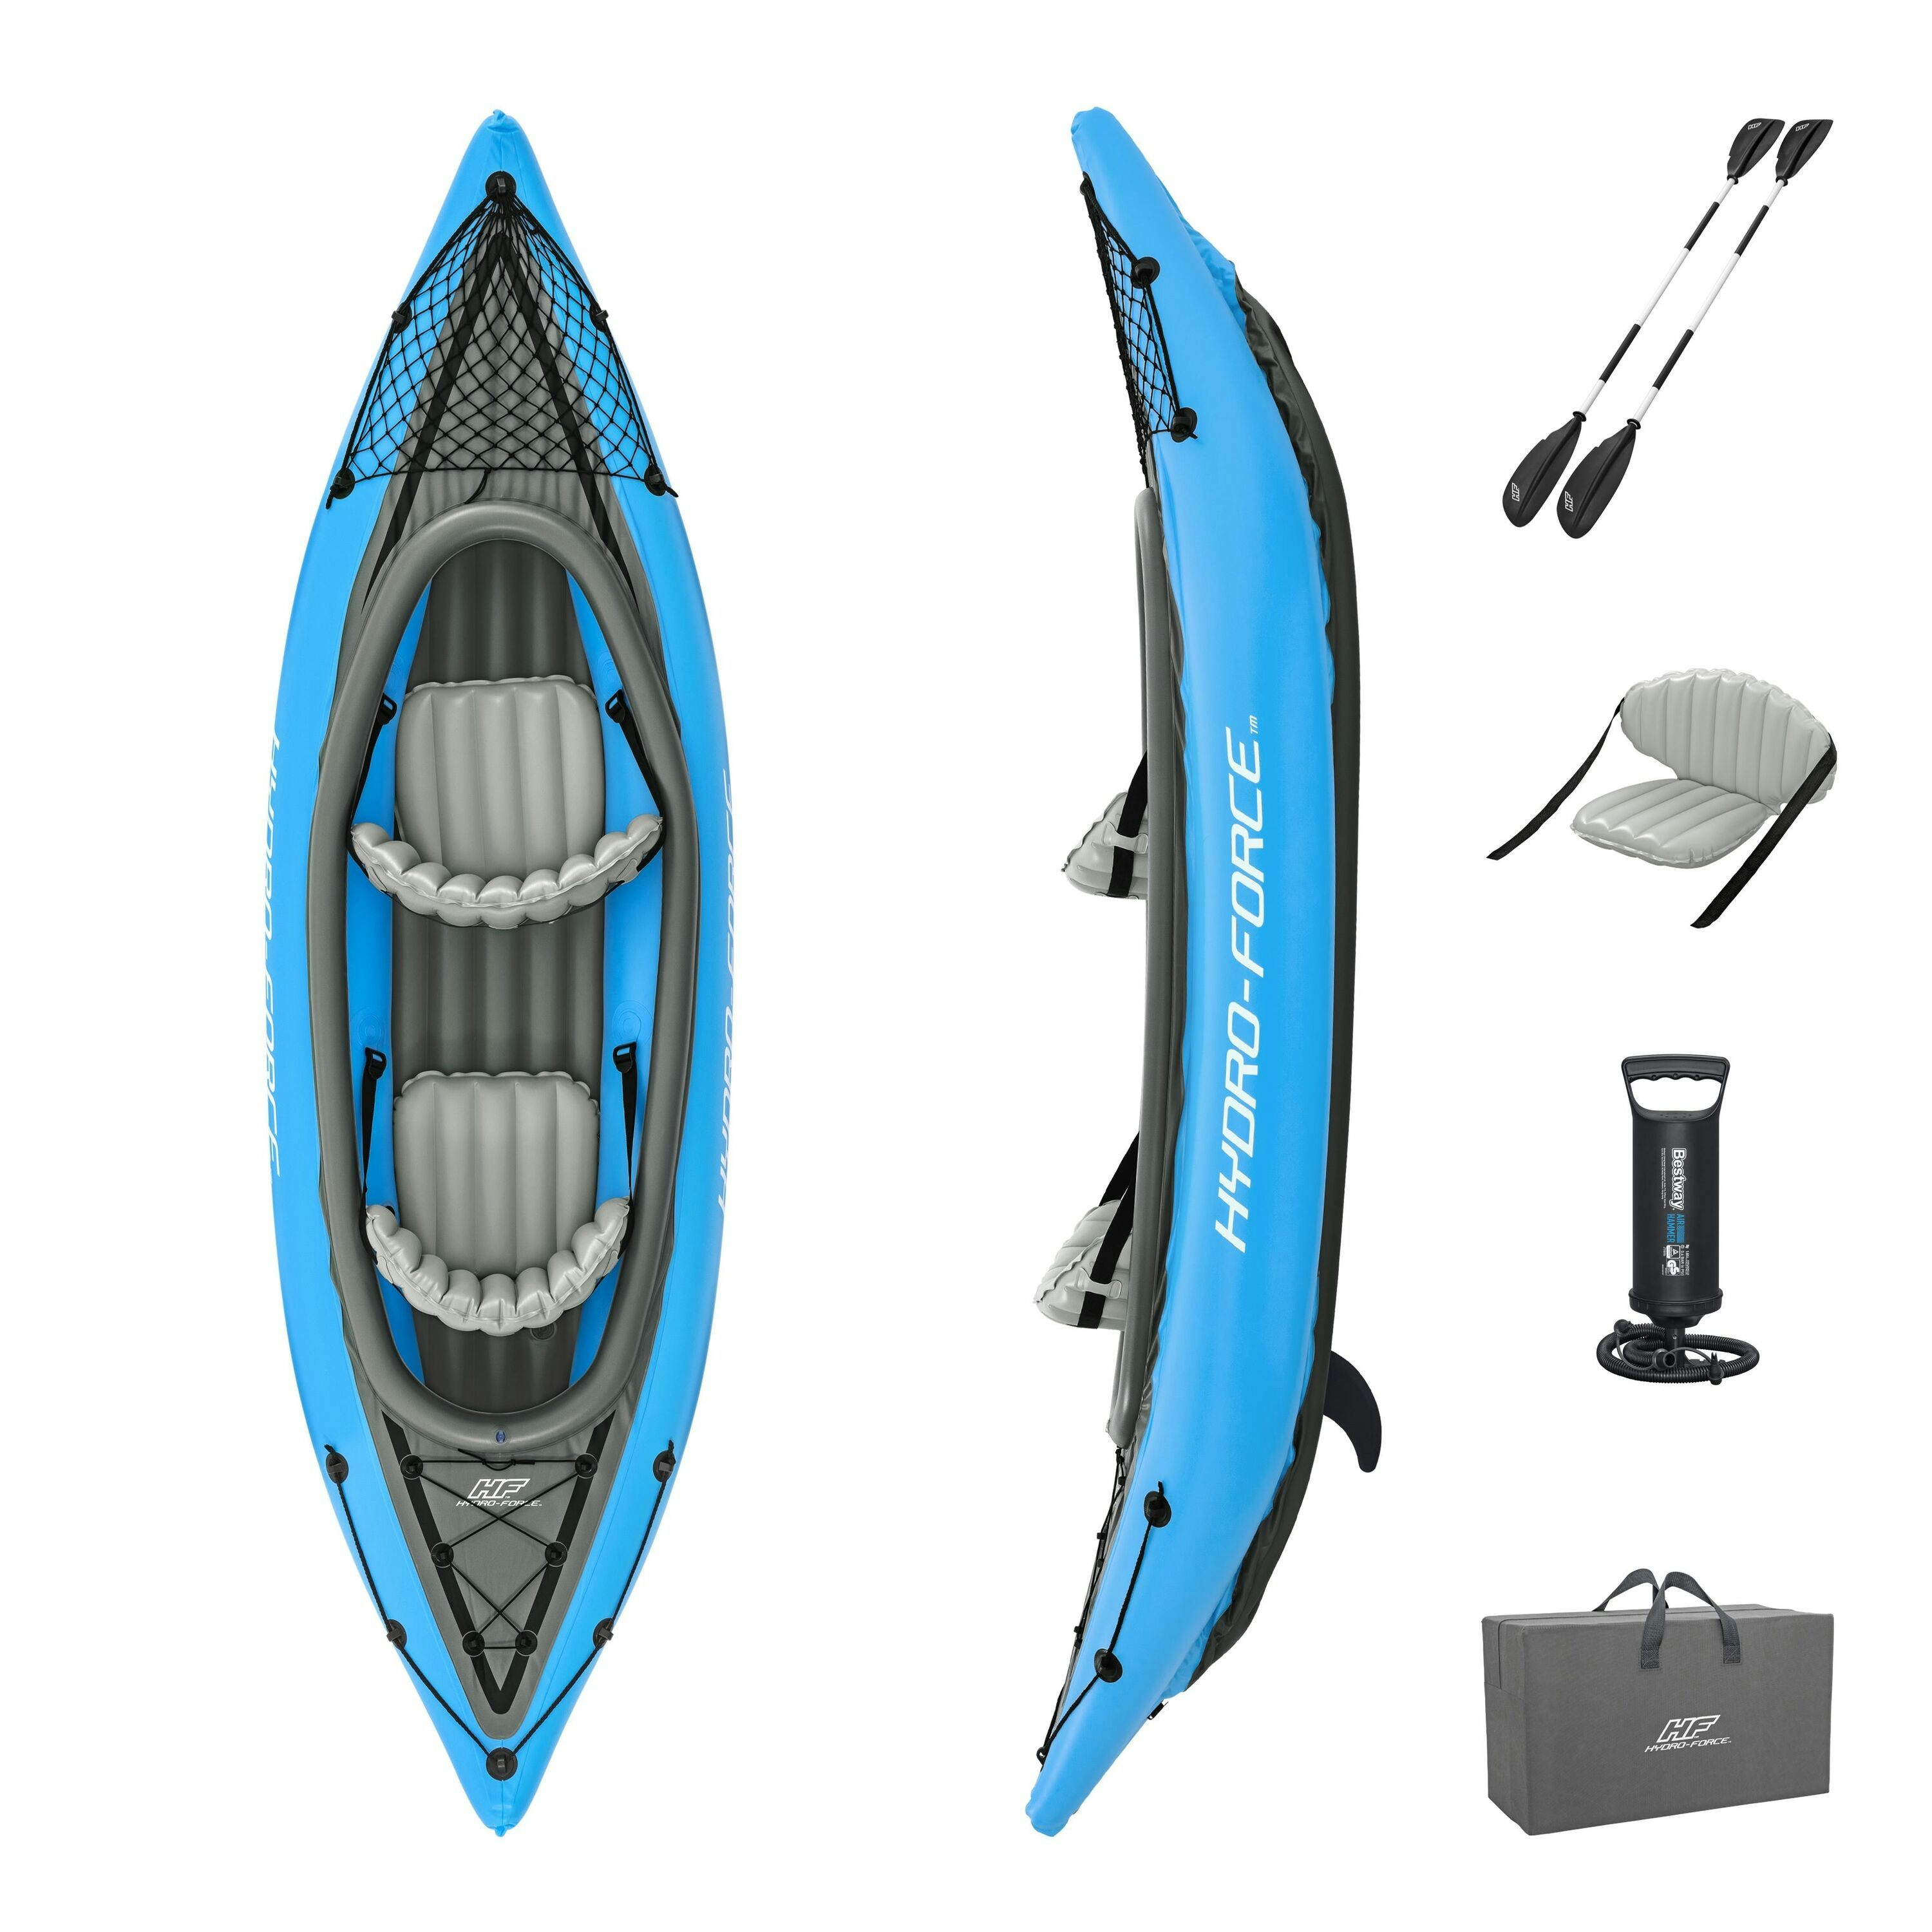 Sports d'eau Kayak gonflable Cove Champion X2 Hydro-Force™ 331 x 88cm, 2 places, 180 kg max, 2 pagaies, 2 ailerons amovibles et une pompe Bestway 1